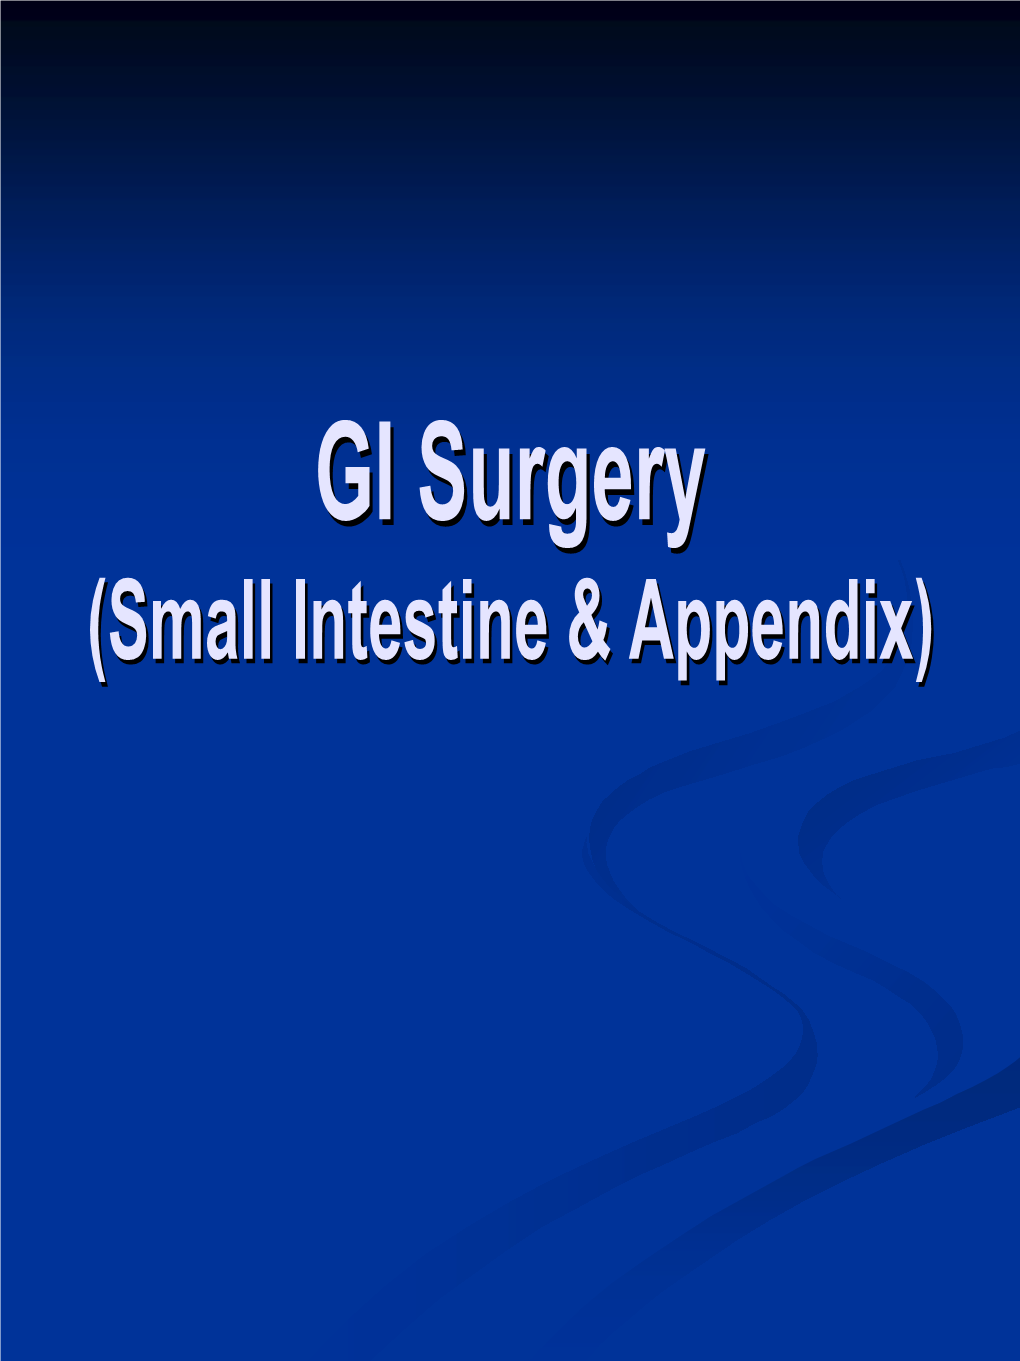 Small Intestine & Appendix